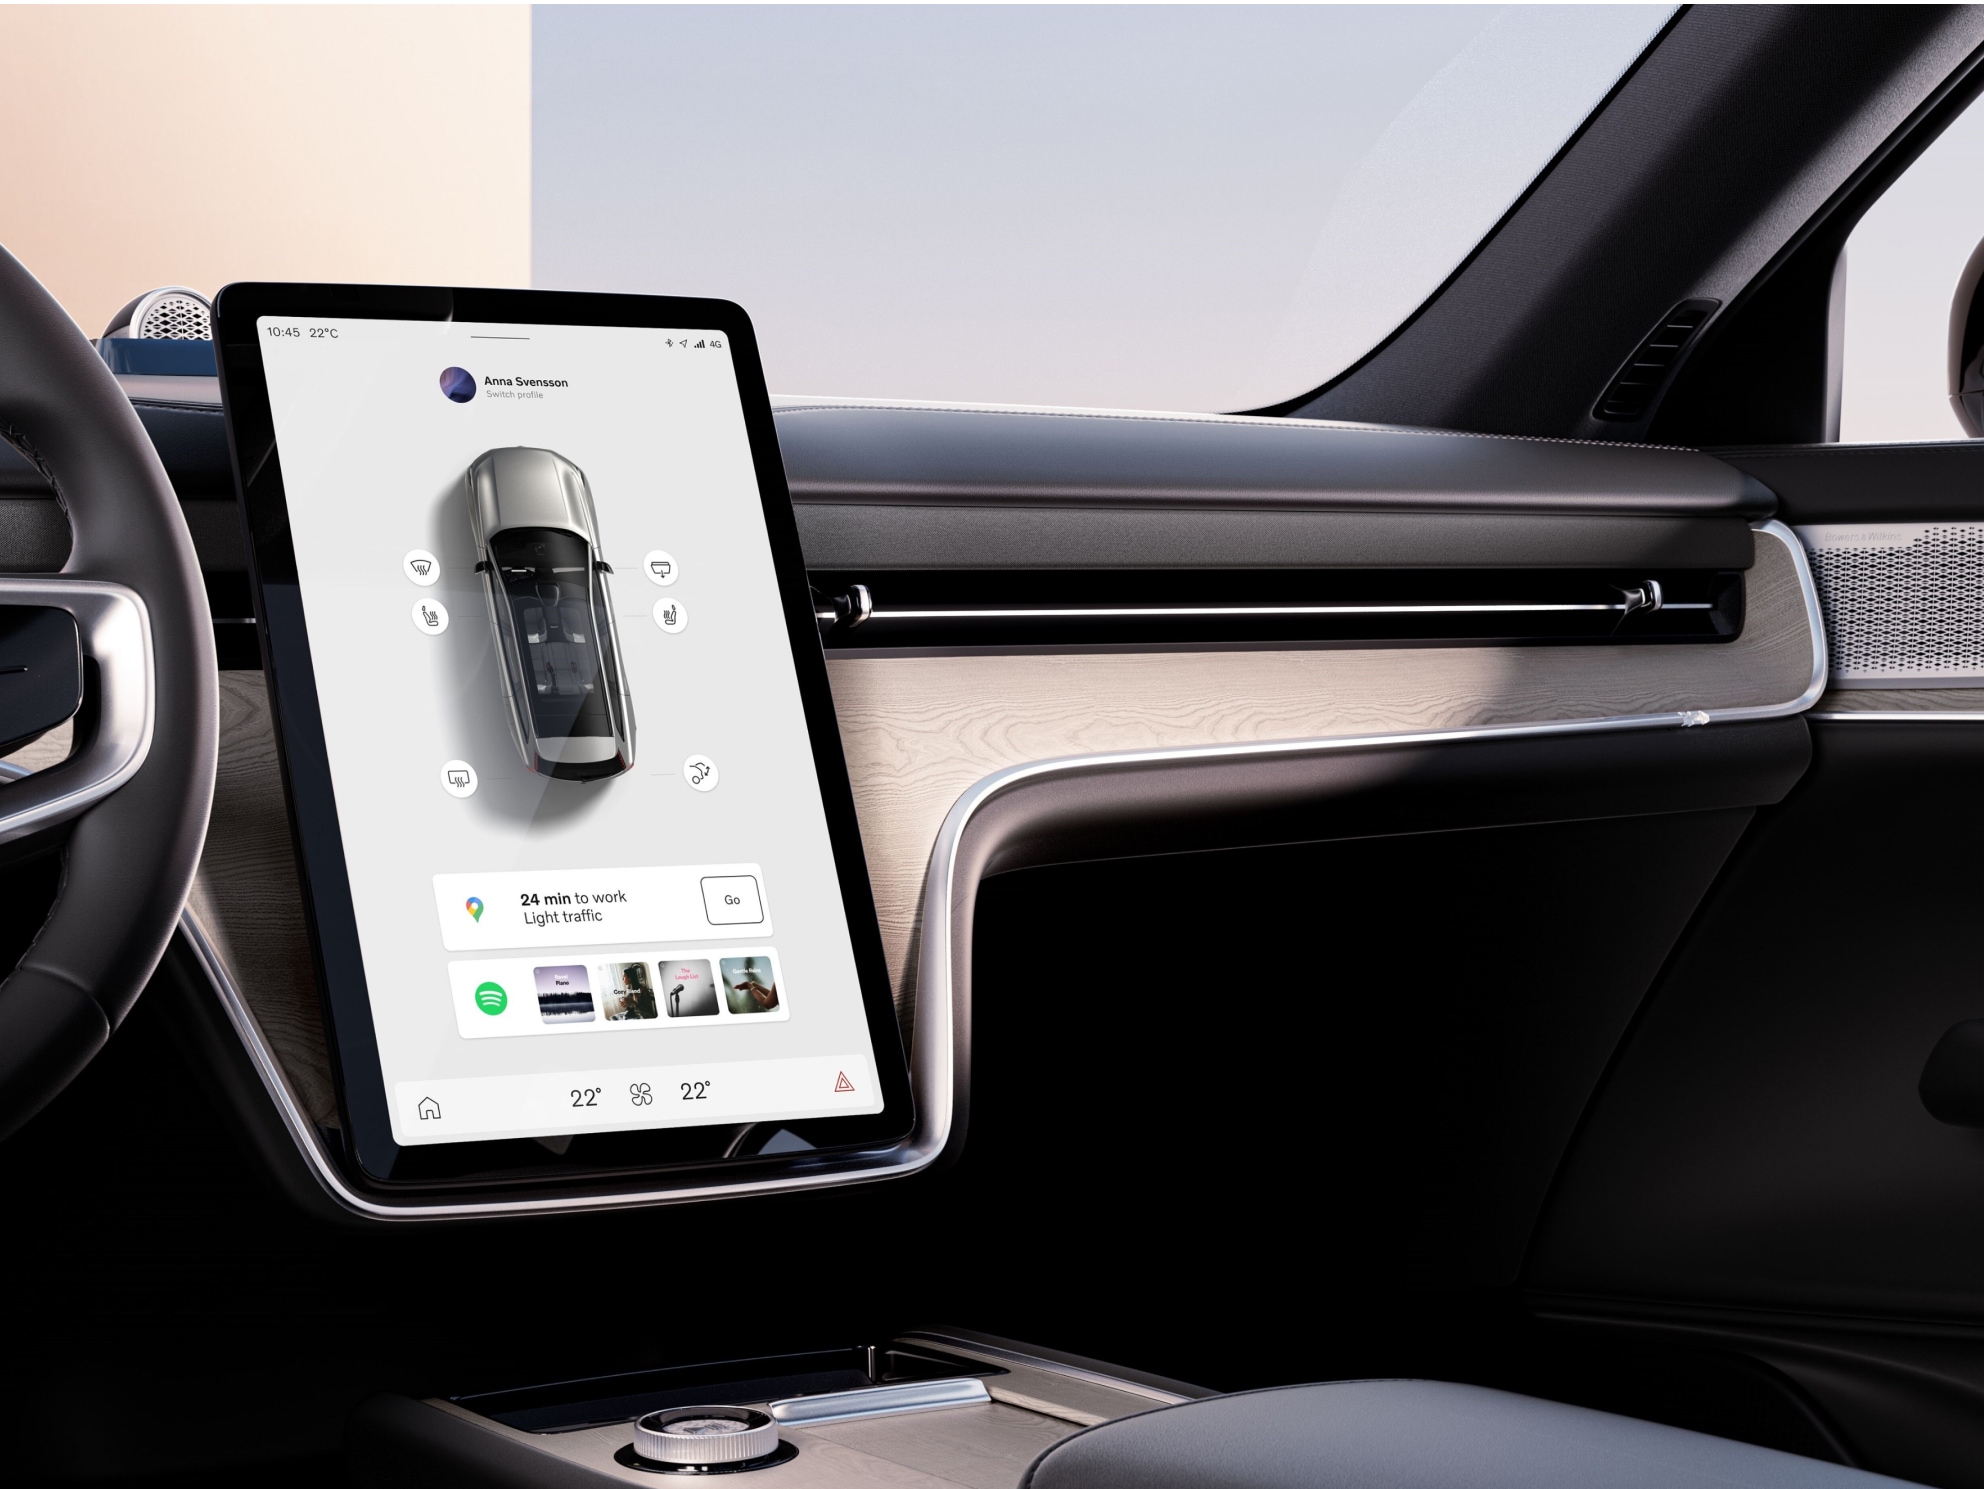 沃尔沃汽车仪表盘内部视图和车内娱乐系统显示的信息。